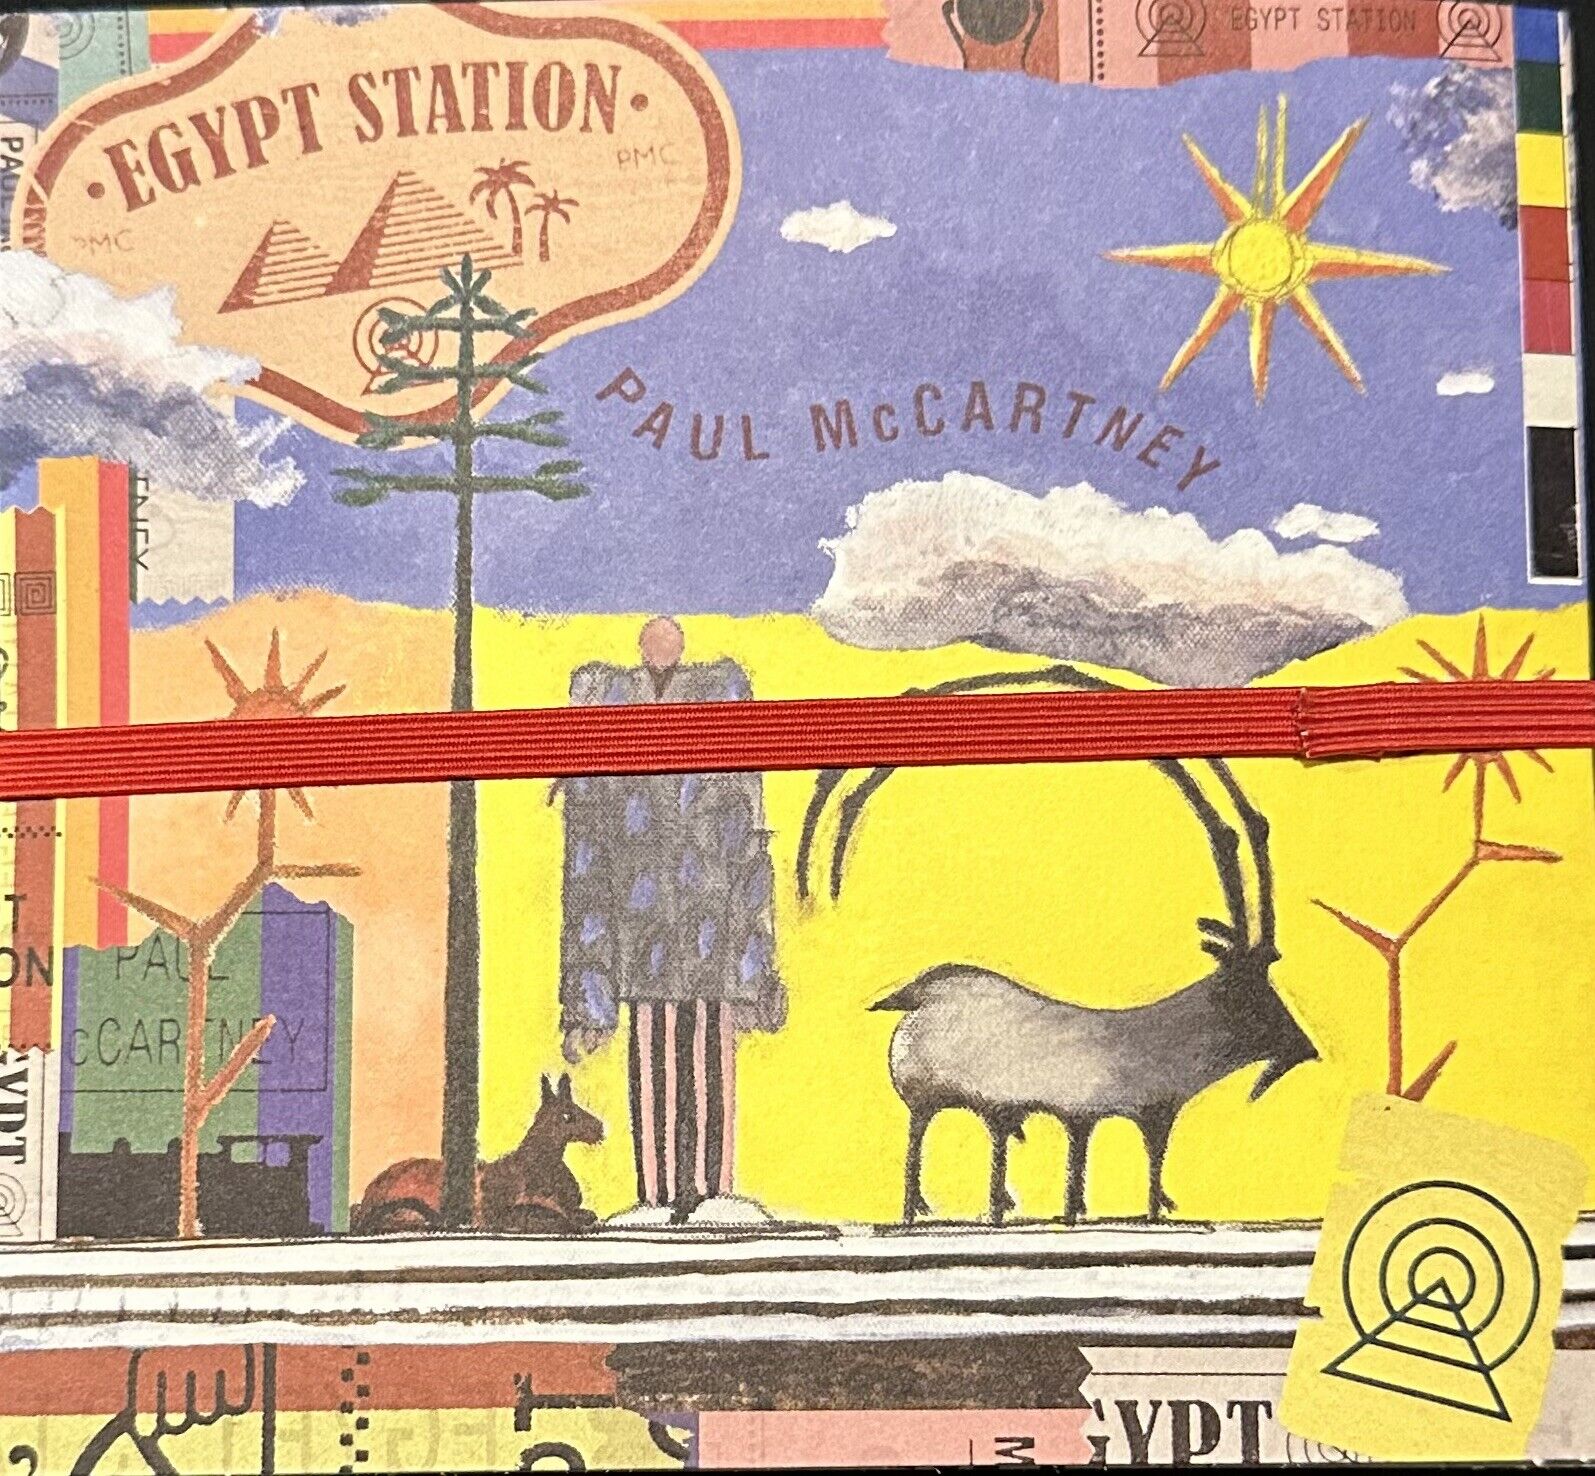 Egypt Station by Paul McCartney (CD, 2018) CD NEVER OPENED